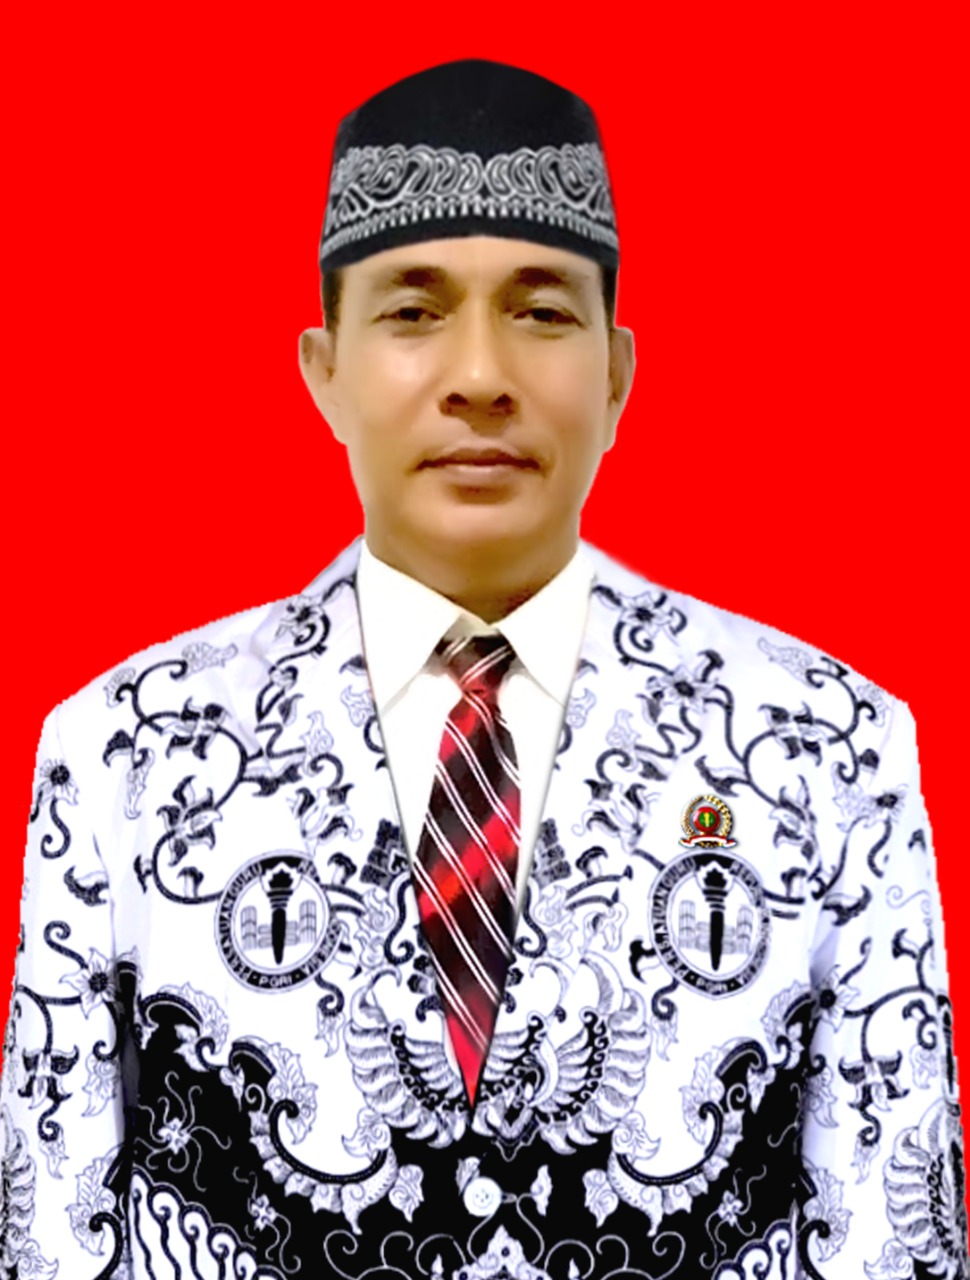 Ketua PGRI Aceh Tamiang Dukung Kebijakan Full Day School untuk Kurangi Kecanduan Anak Terhadap Gadget